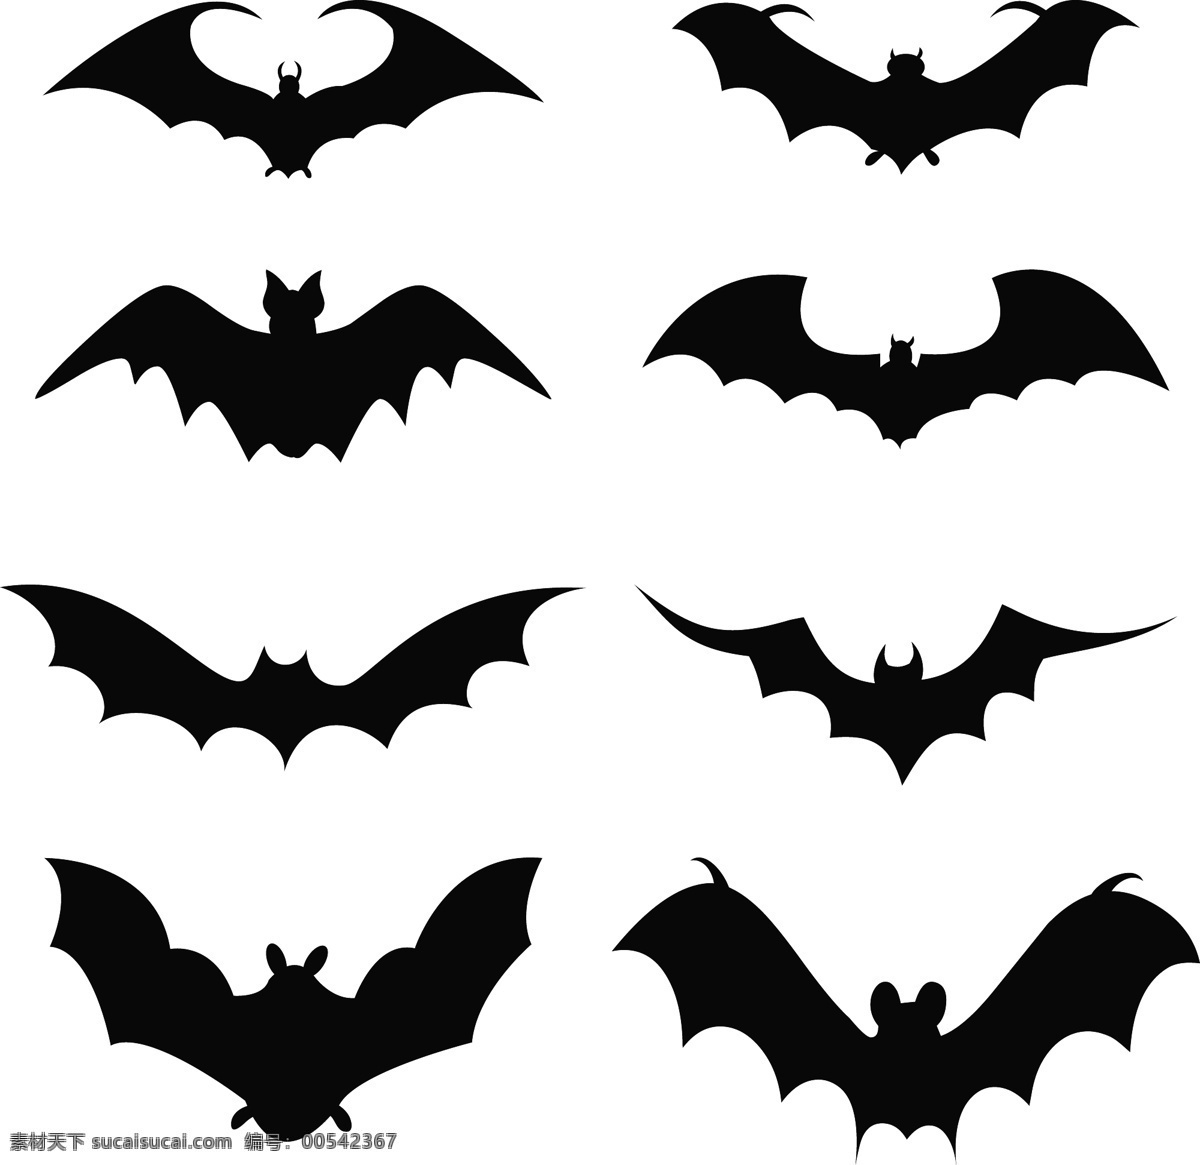 套蝙蝠的剪影 蝙蝠 剪影 轮廓 设置 设置的蝙蝠 蝙蝠的剪影 向量 集 剪 影集 万圣节 矢量 图标 框架 其他矢量图